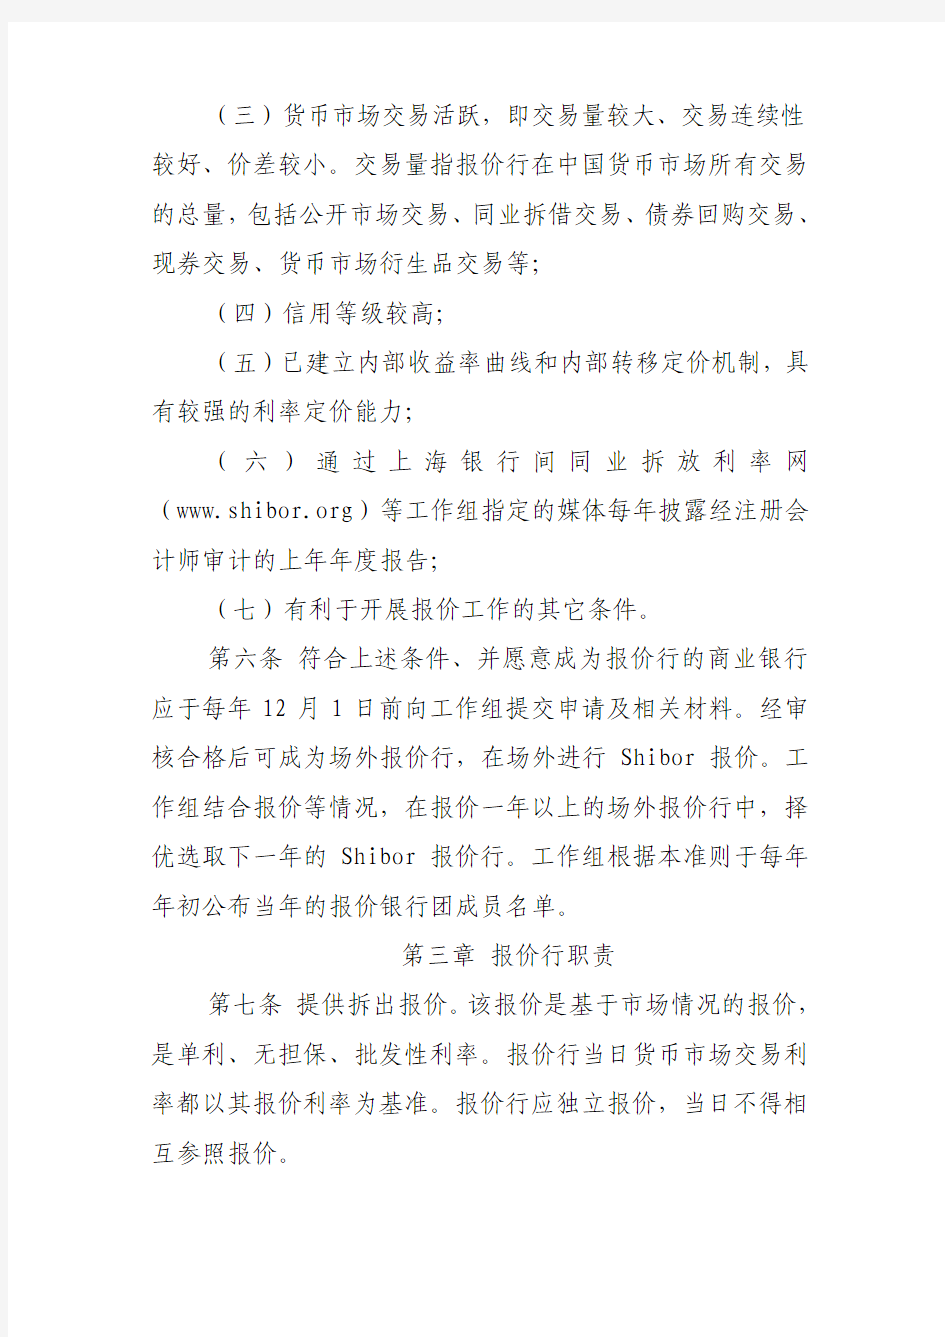 上海银行间同业拆放利率(Shibor)实施准则(修订版)